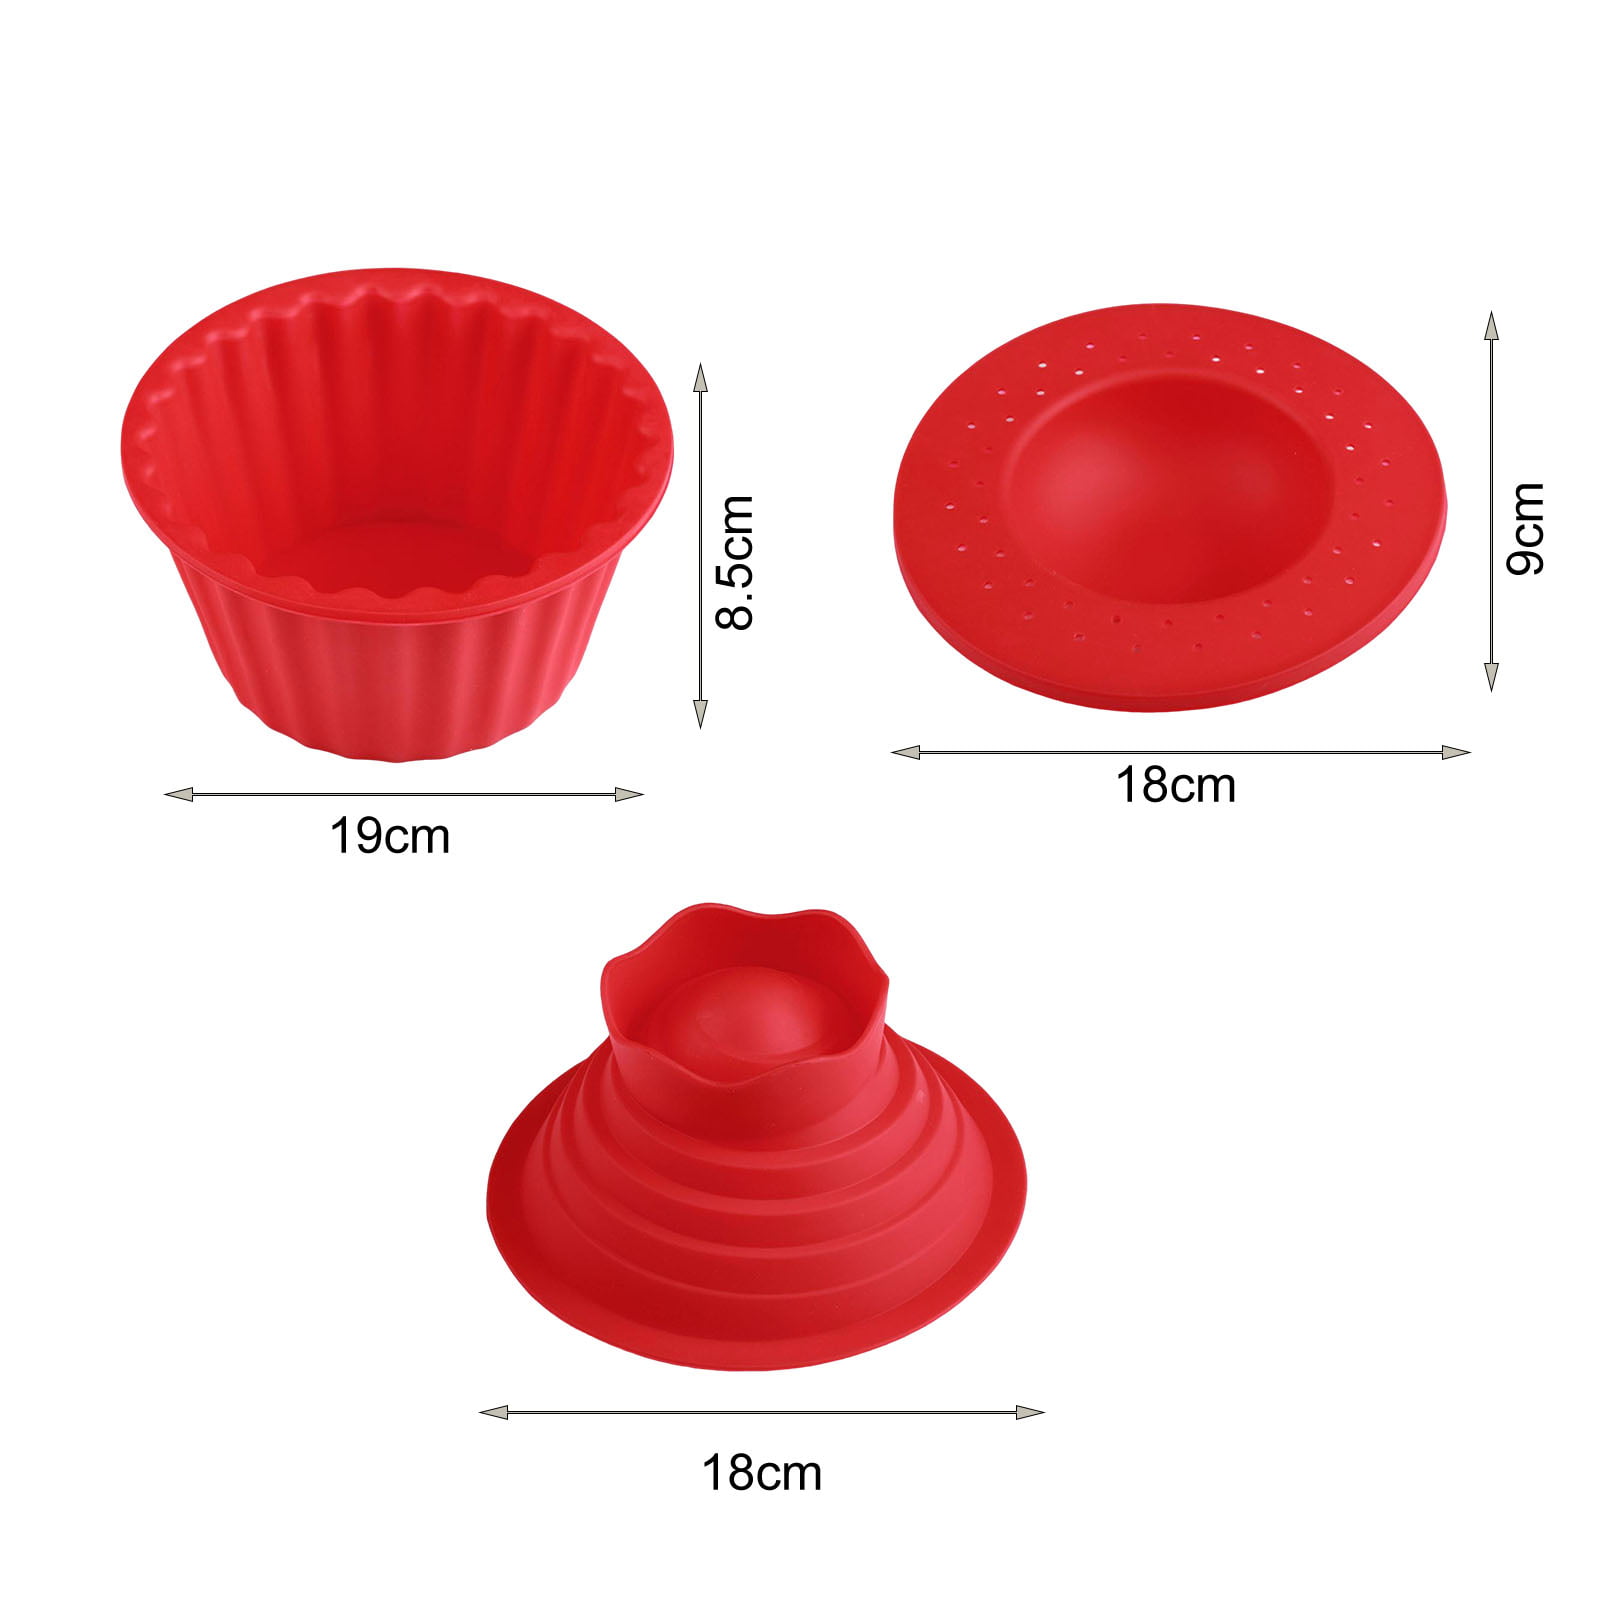  Big Top Cupcake - Utensilios de silicona para hornear